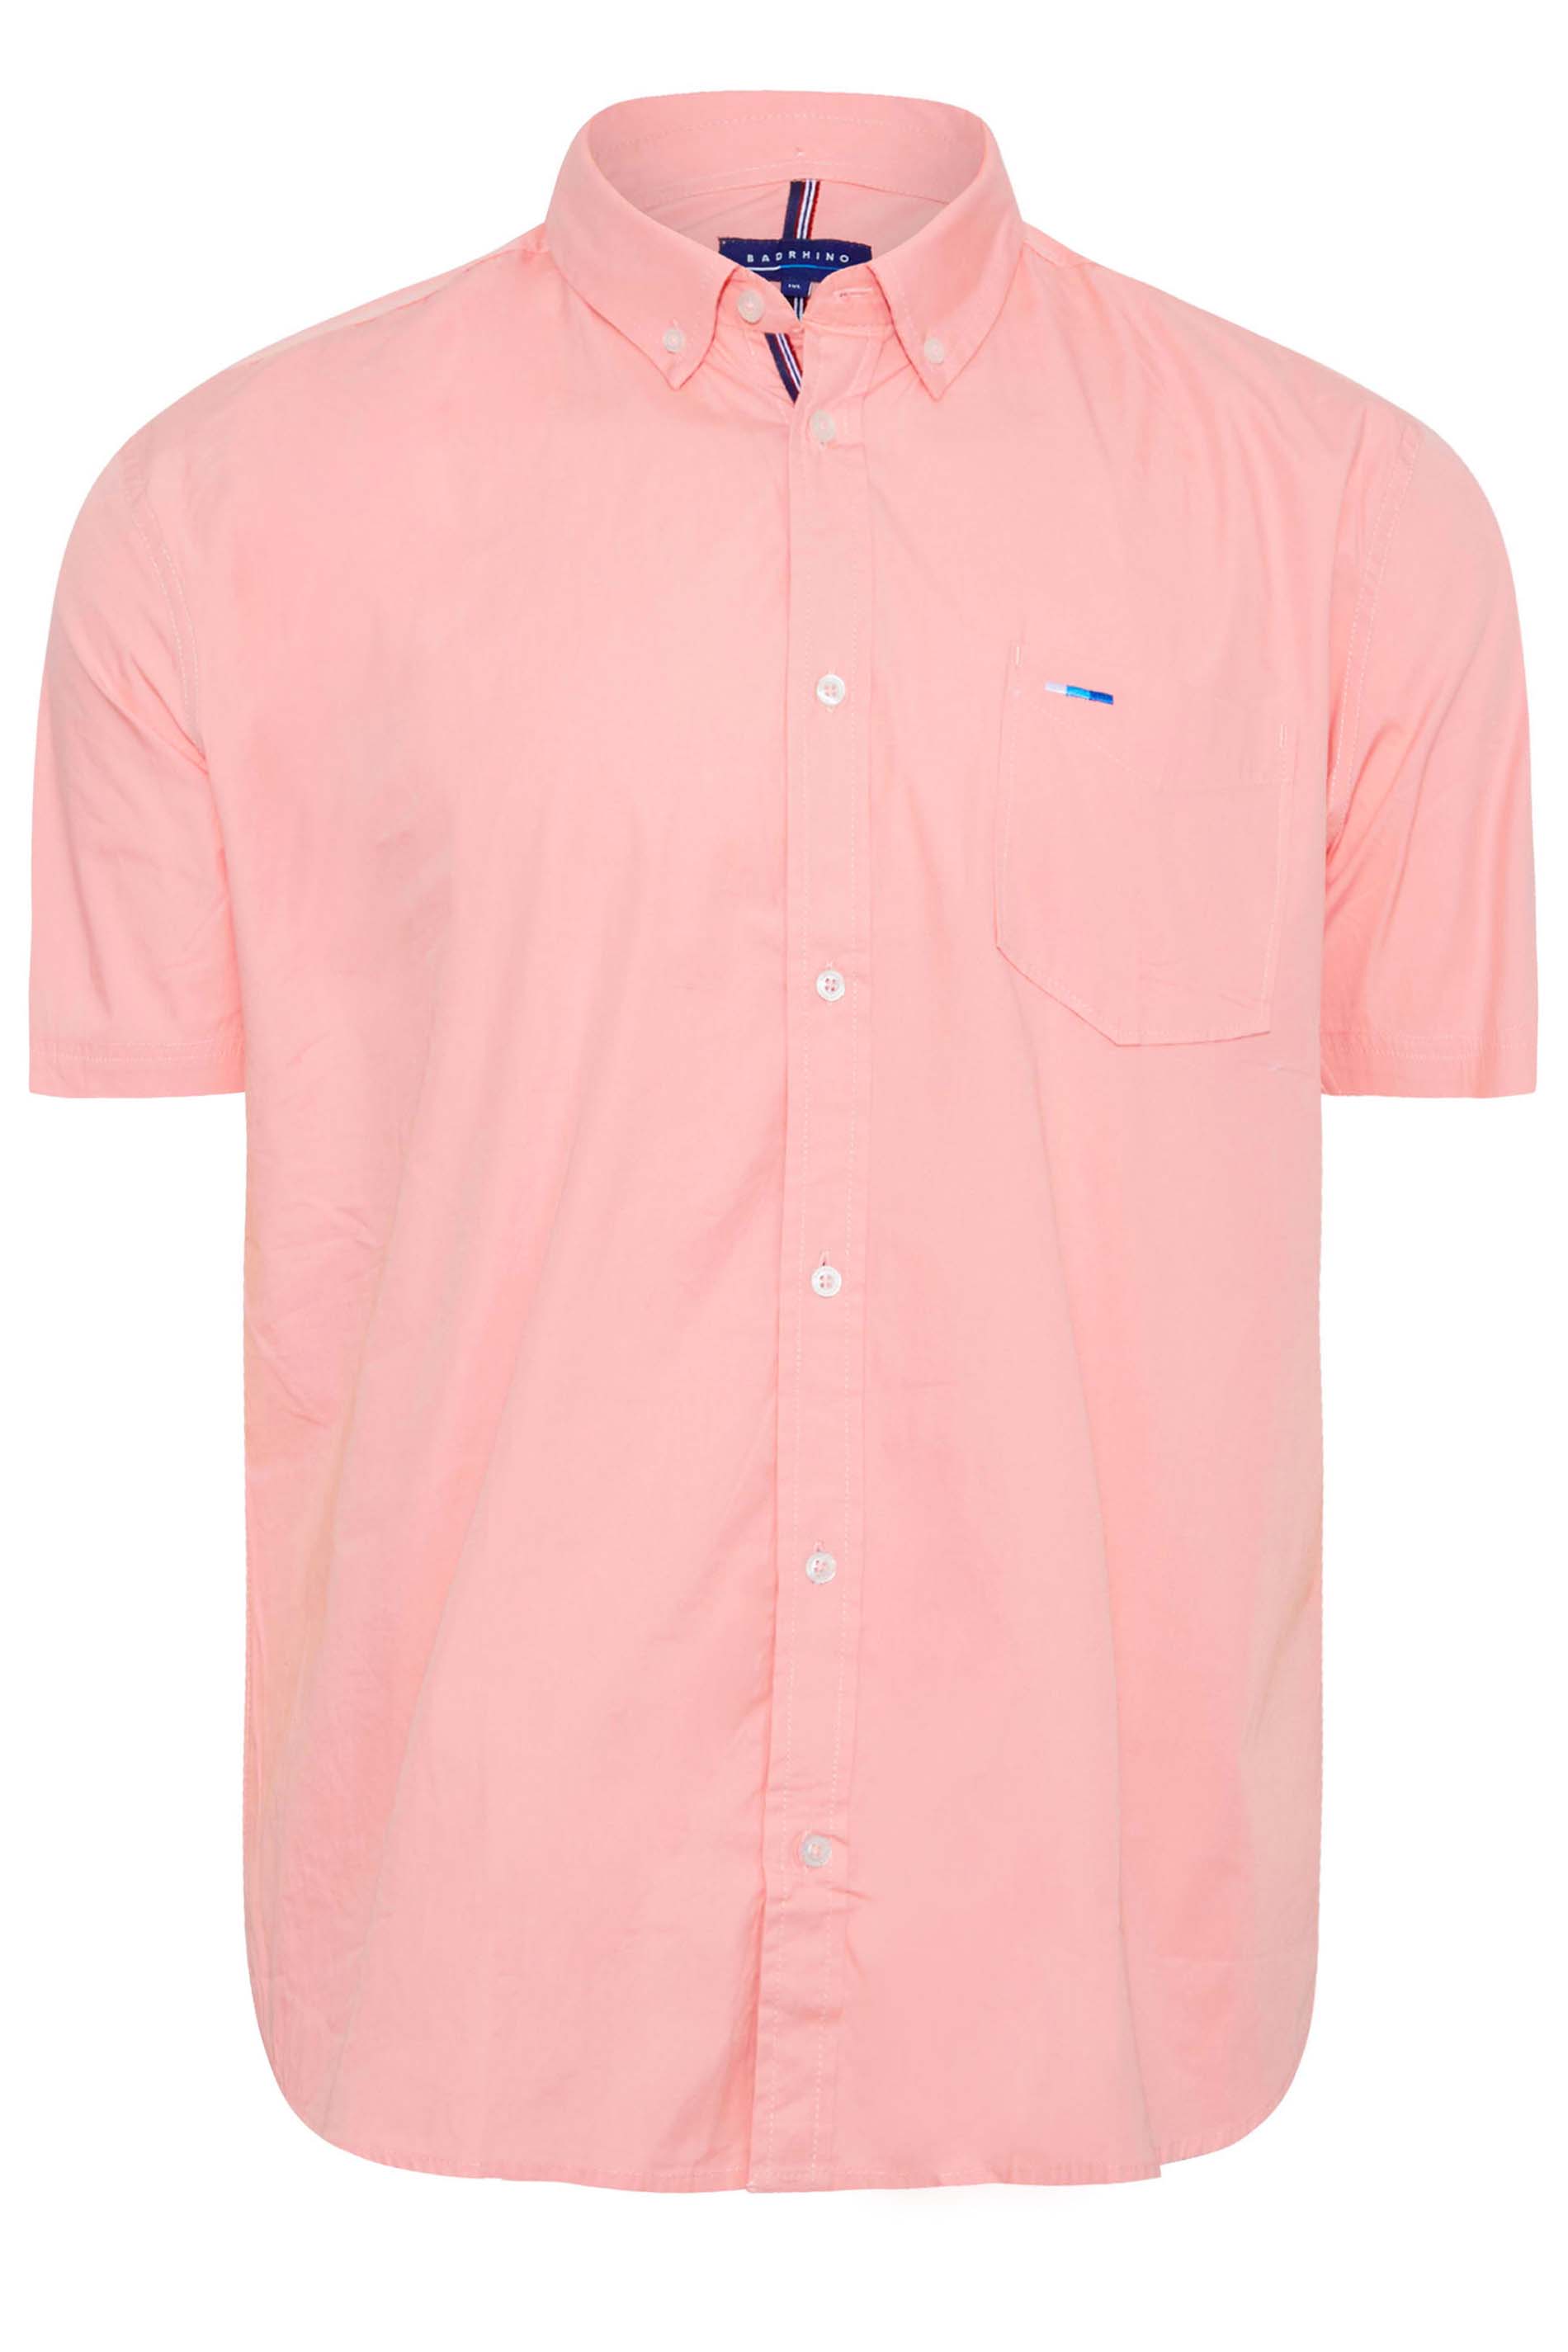 BadRhino Pink Cotton Poplin Short Sleeve Shirt | BadRhino 3